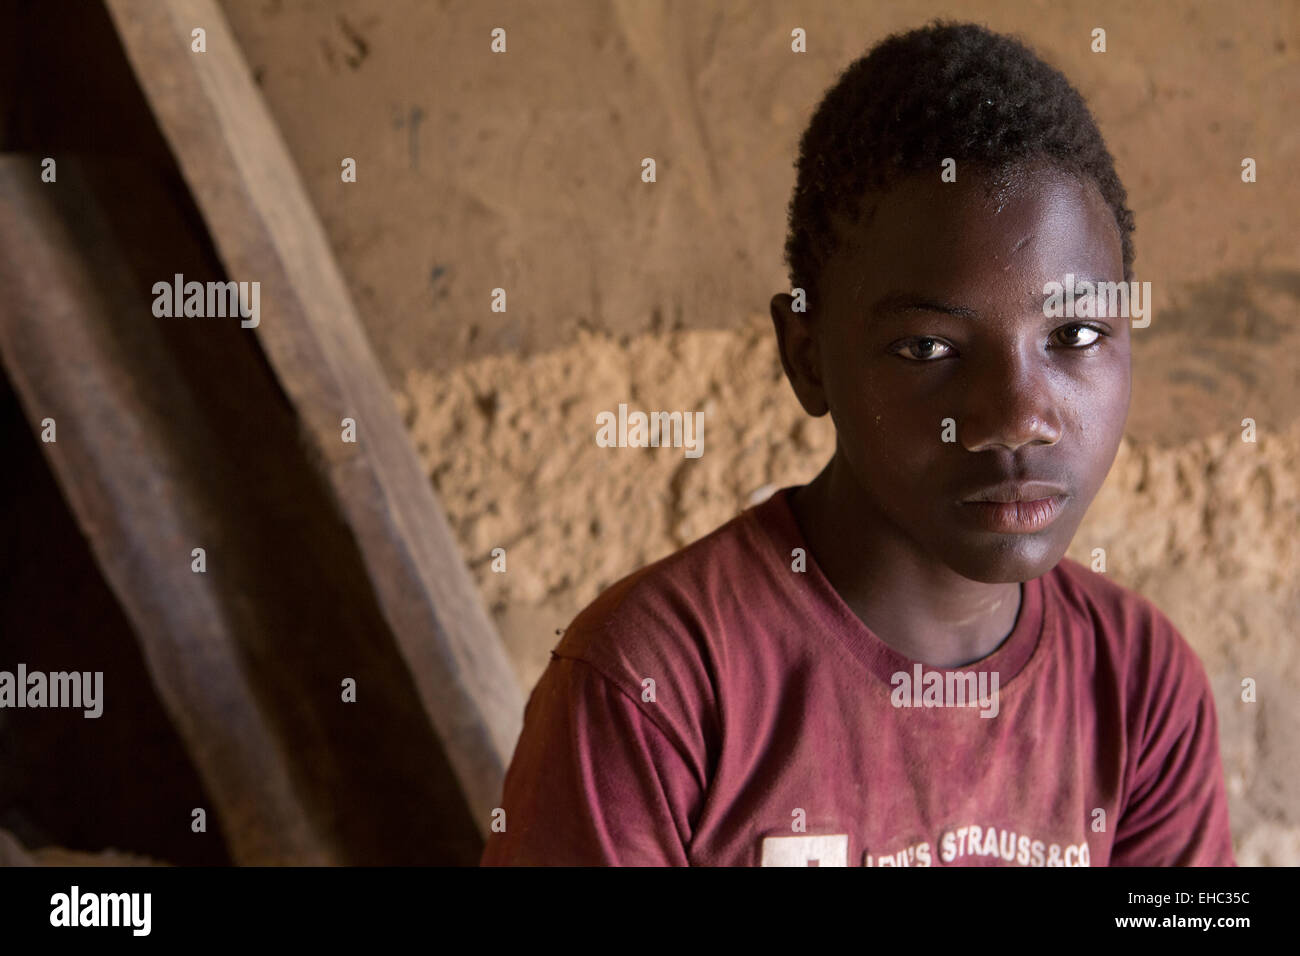 Komobangau miniere d oro, Niger; Samaila Ibrahim, 15, opere d'oro di estrazione dal basso grado di minerale. Egli può guadagnare fino a $100 in un buon mese. Foto Stock